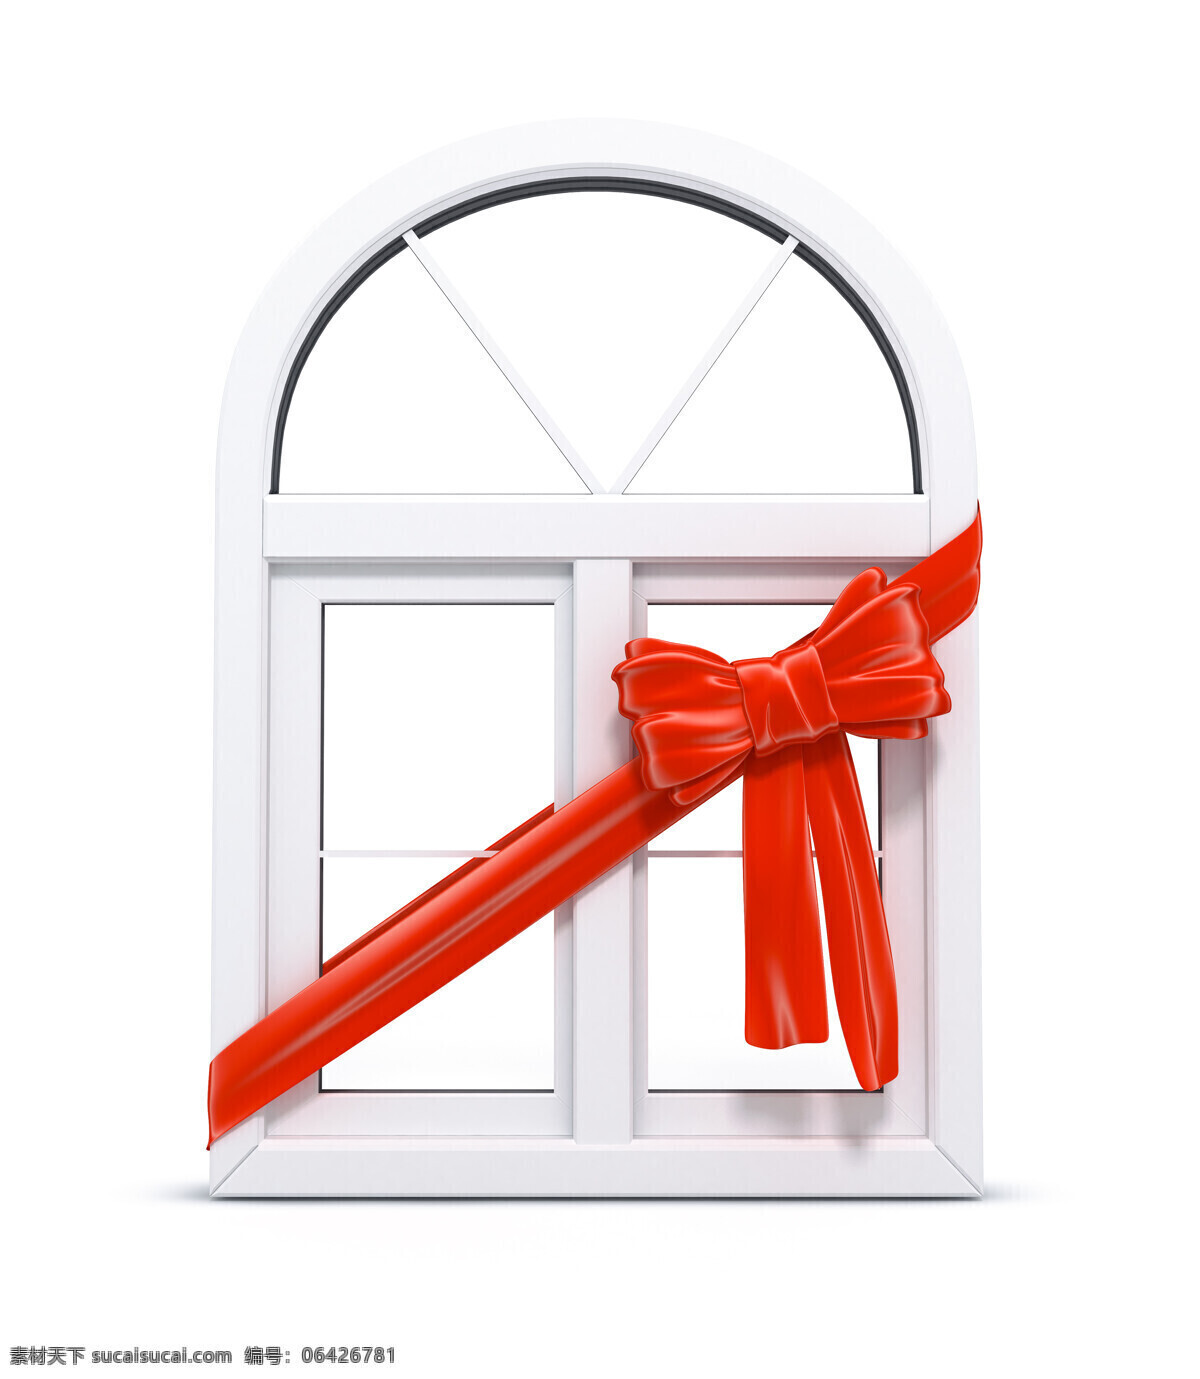 缠 红花 窗子 欧式门窗 门窗 明朗 装潢 窗 玻璃窗 塑钢窗 窗前 其他类别 环境家居